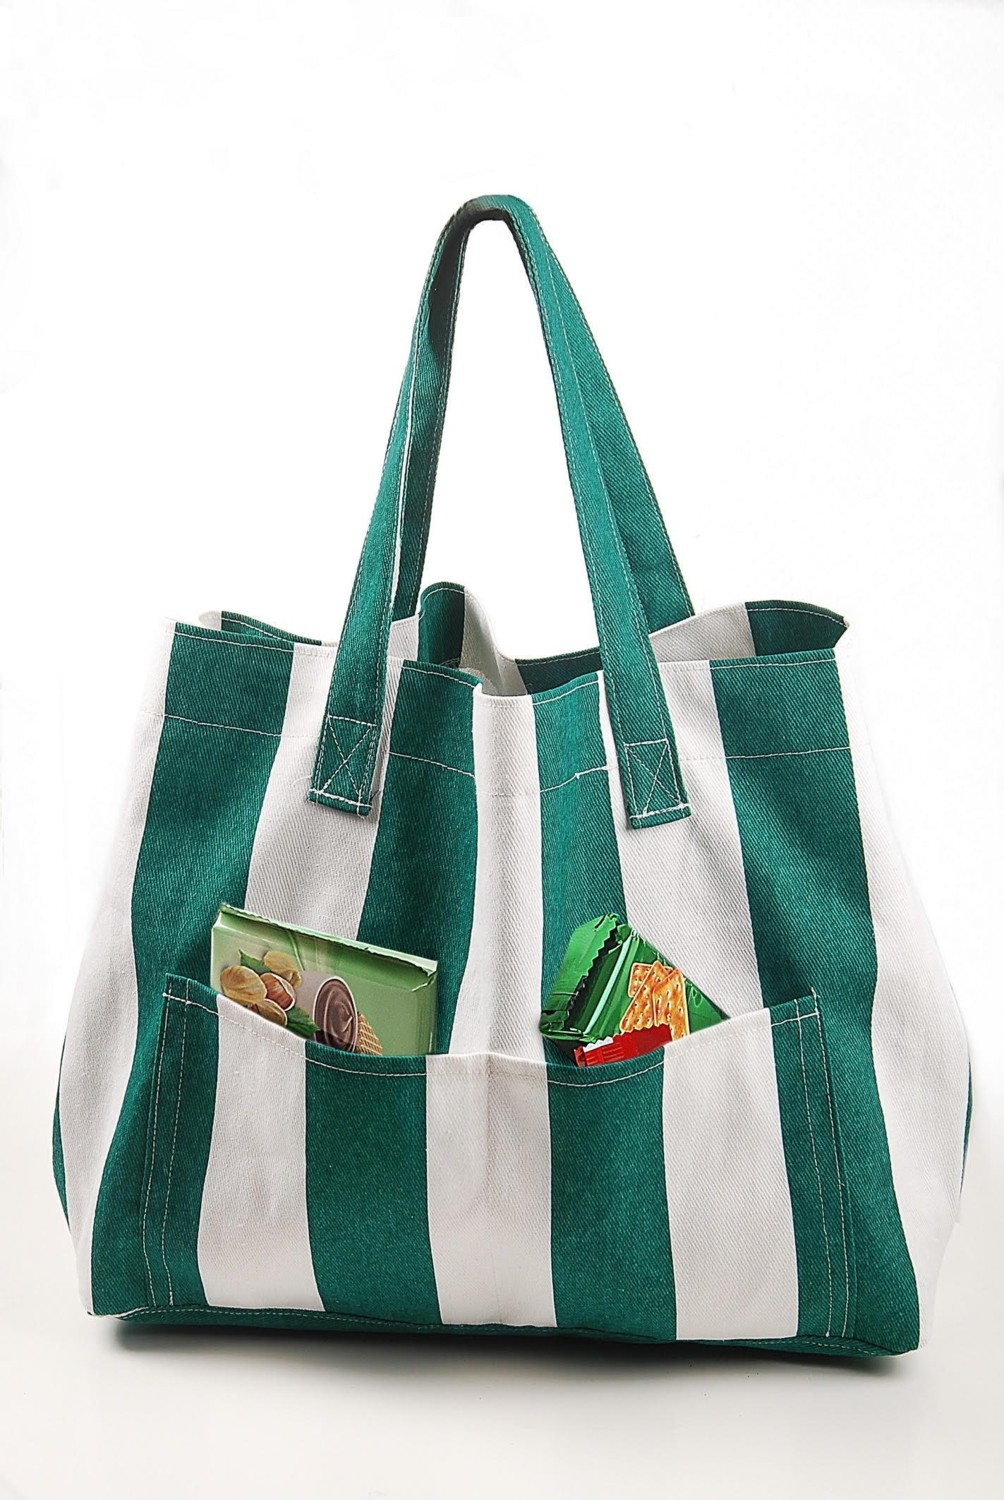 Женская хлопковая сумка Himarry с двумя карманами для пляжа зеленого цвета.